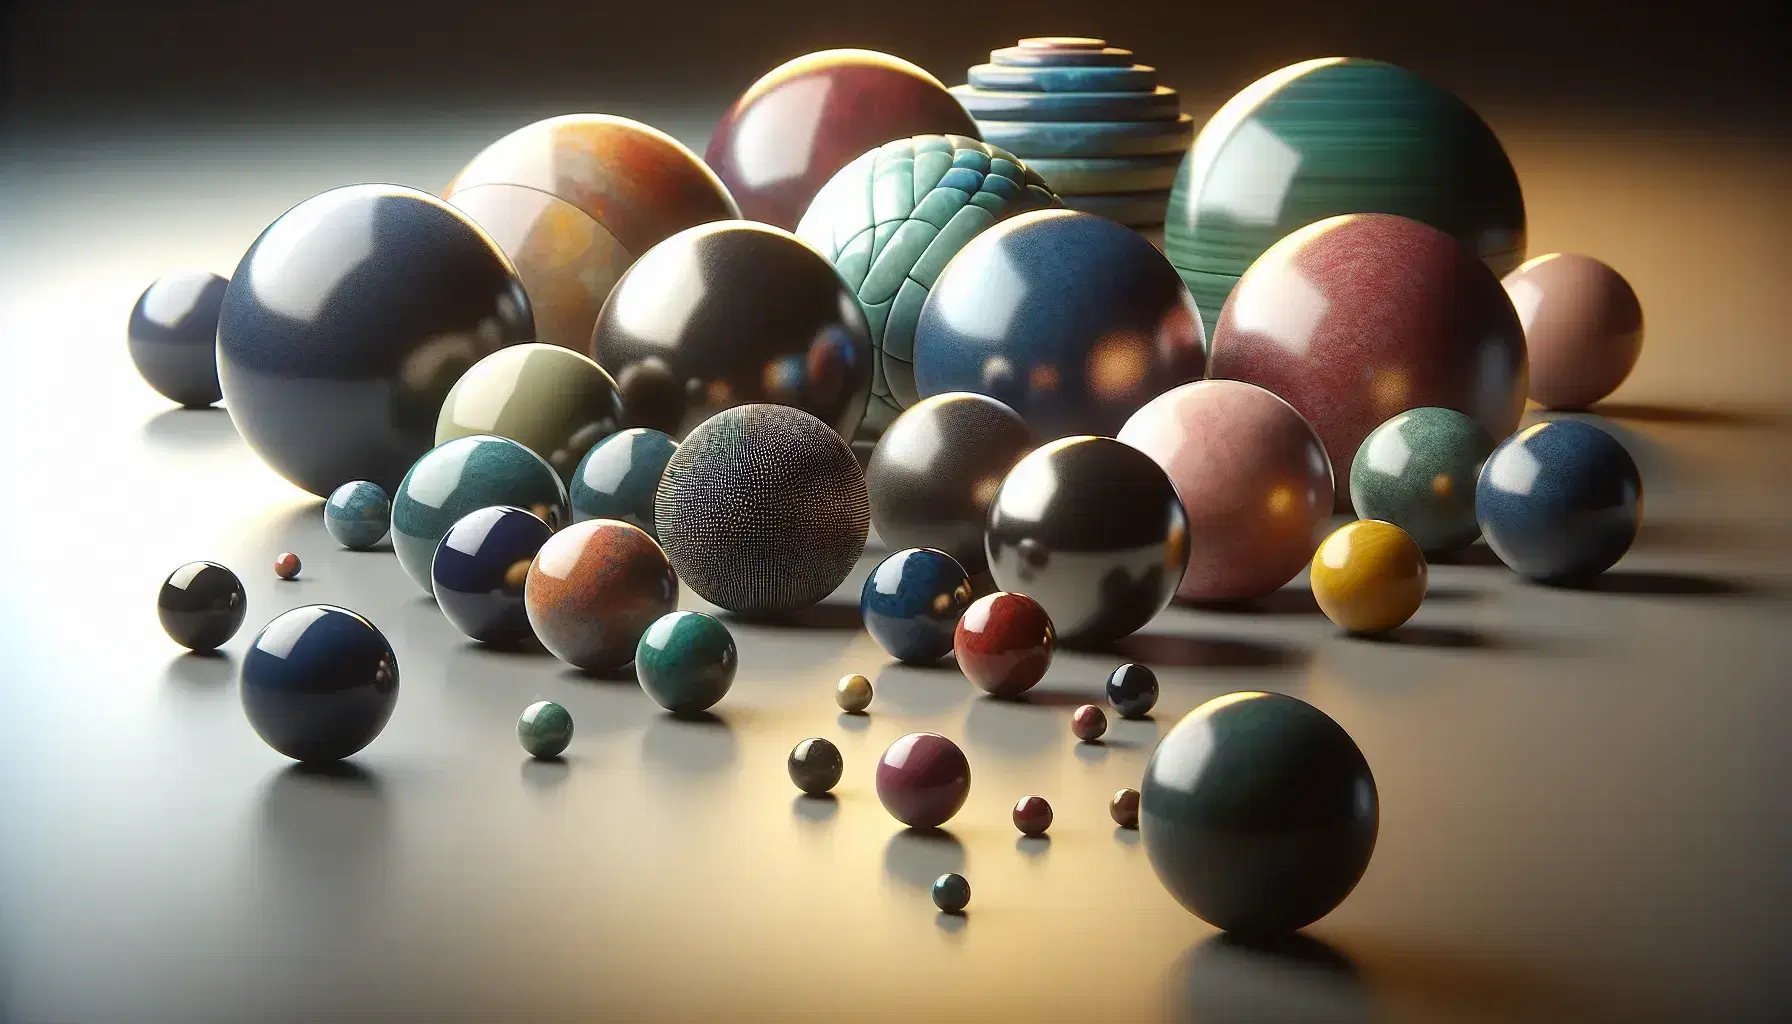 Esferas de distintos tamaños y colores con variadas texturas y brillos sobre superficie lisa, destacando una esfera azul grande y brillante.